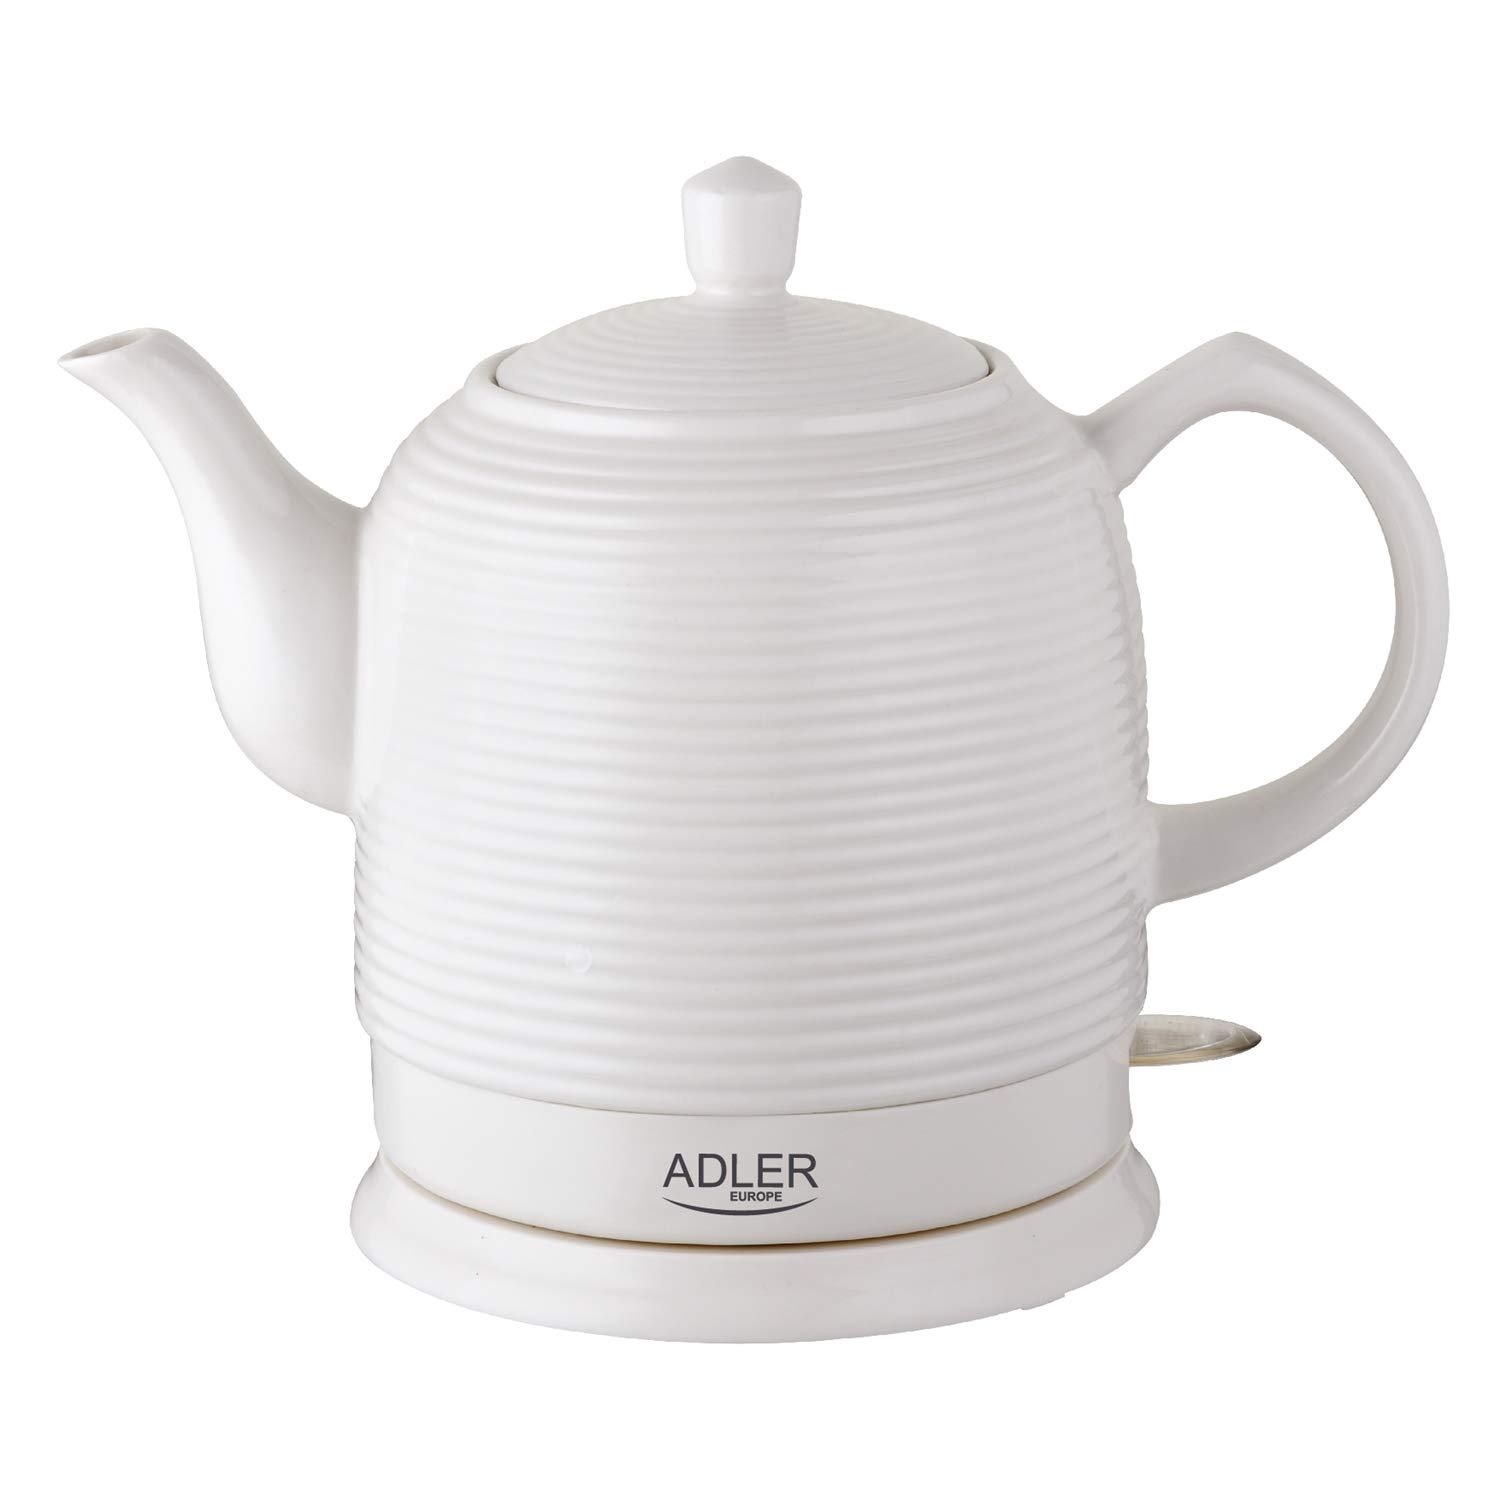 Adler AD 1280 Ceramic Electric Kettle Ceramic Retro Design 1.2 L White 1500